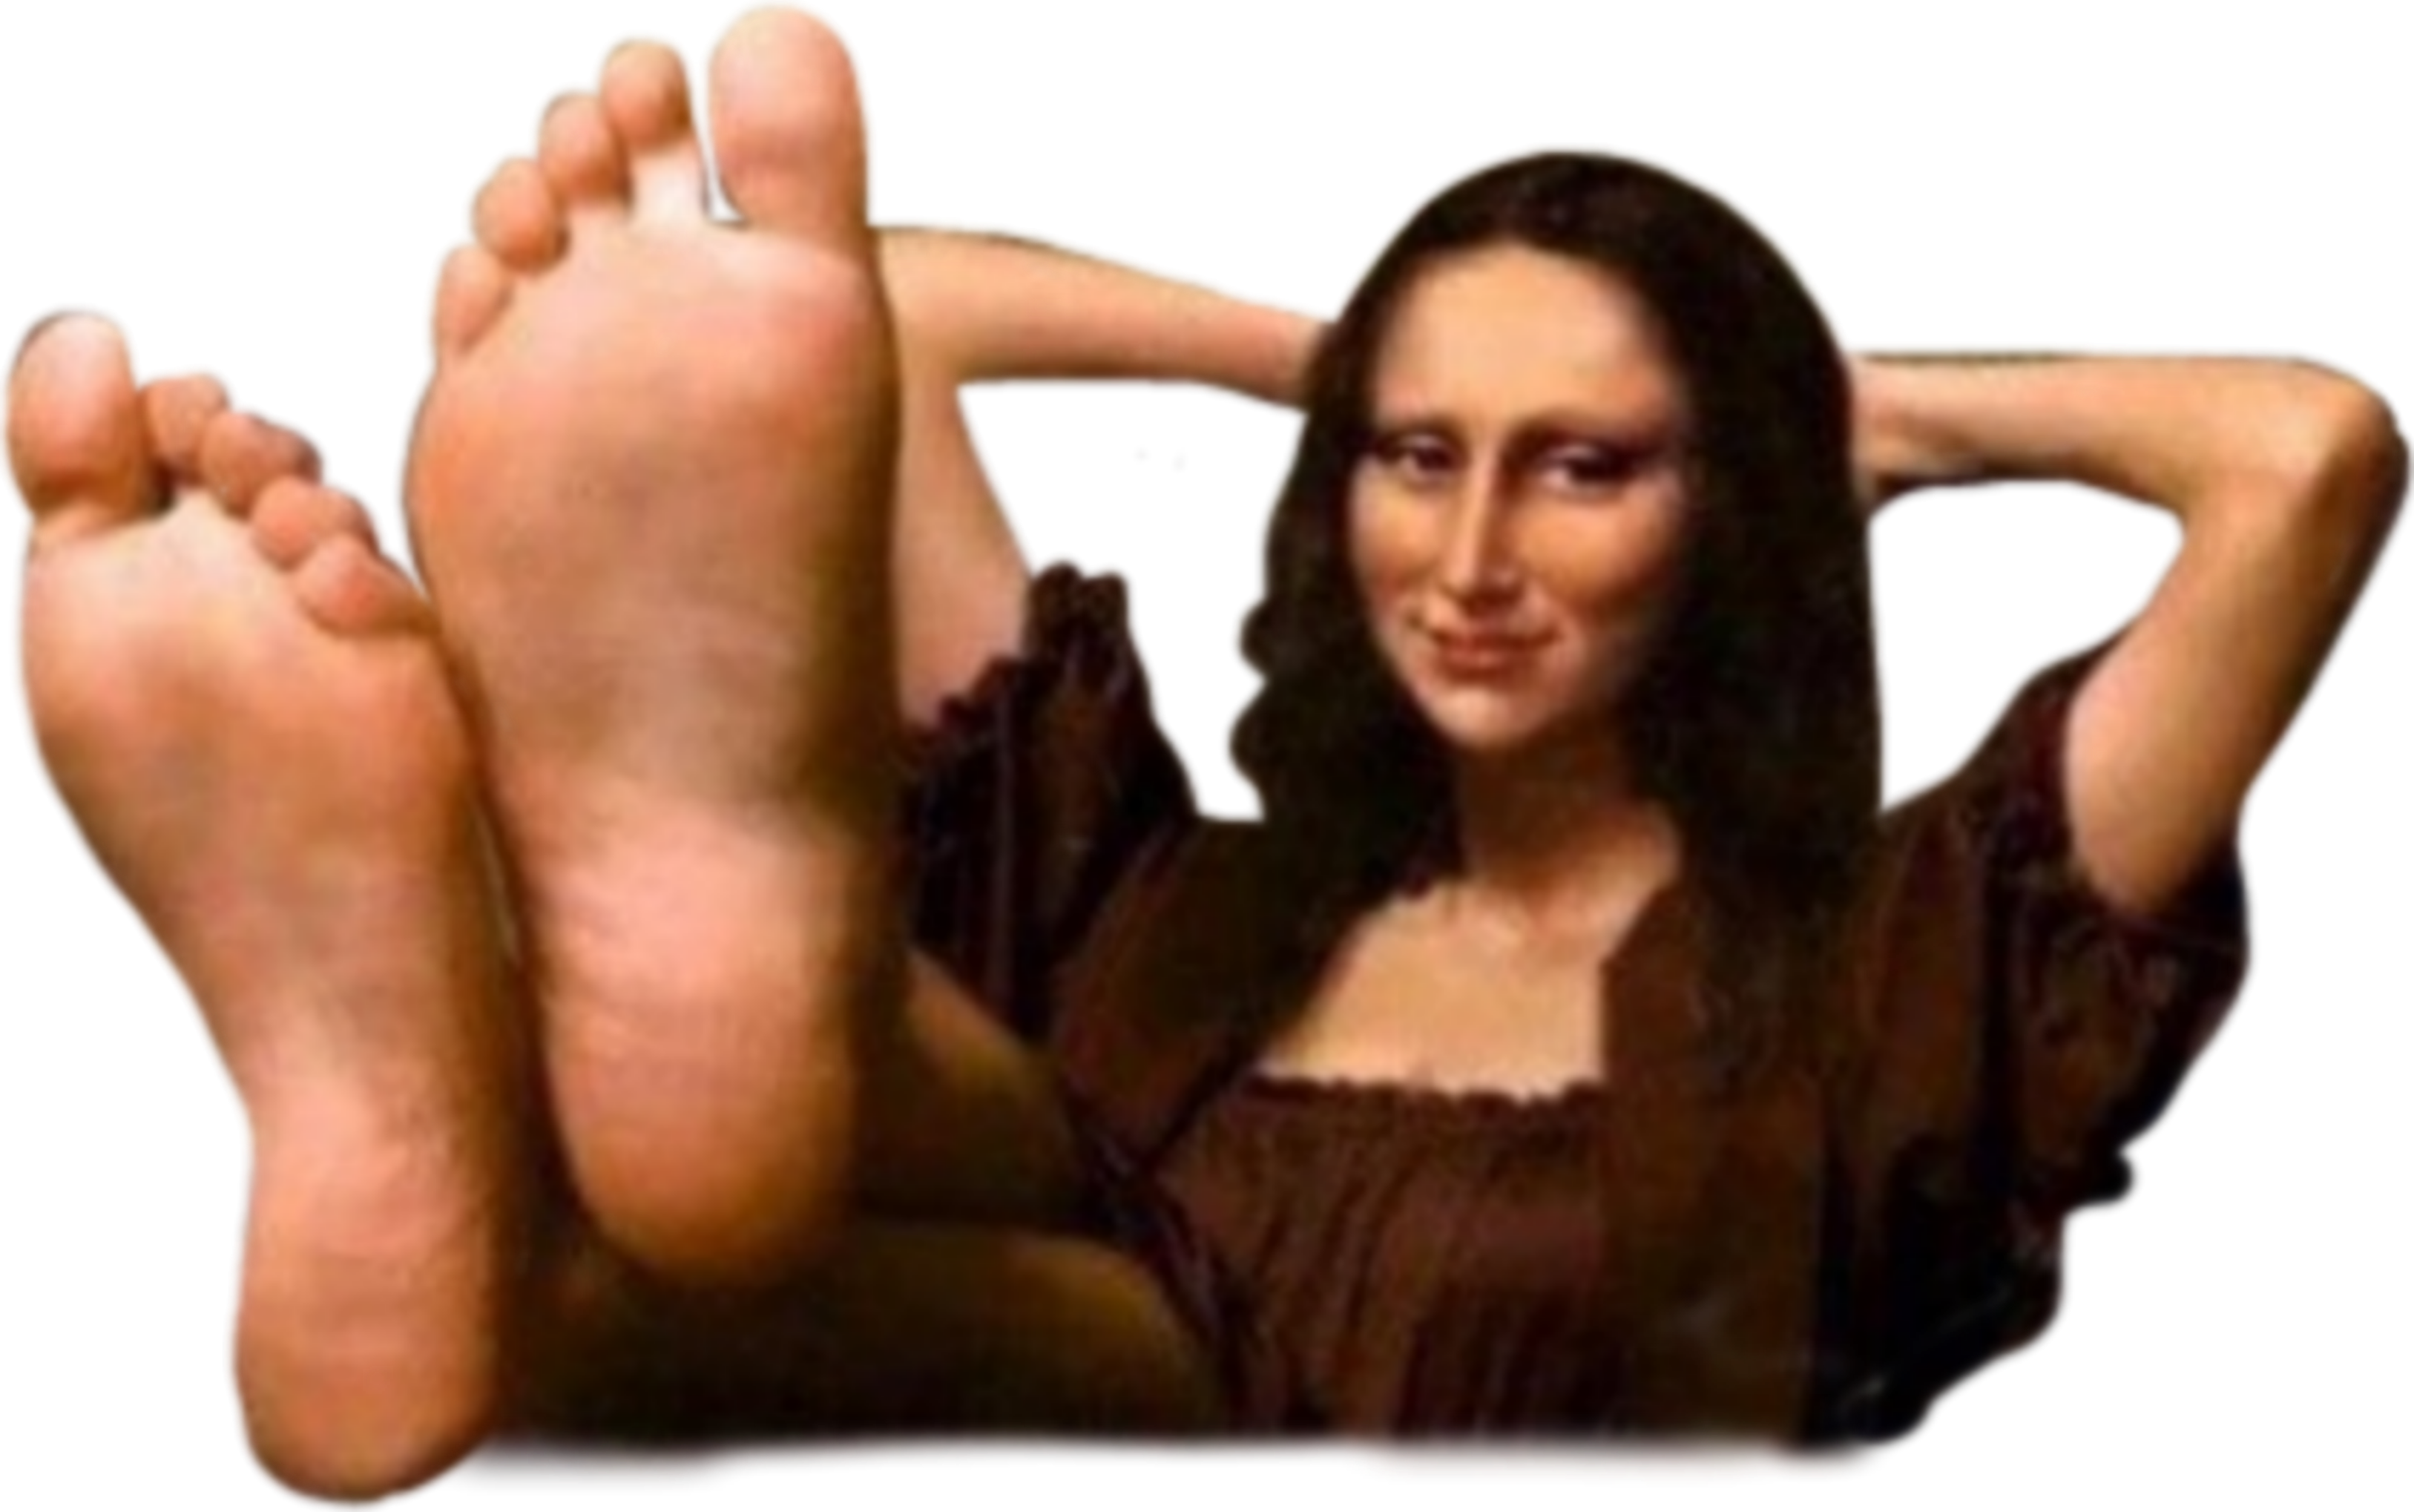 Mona lisa feet pics